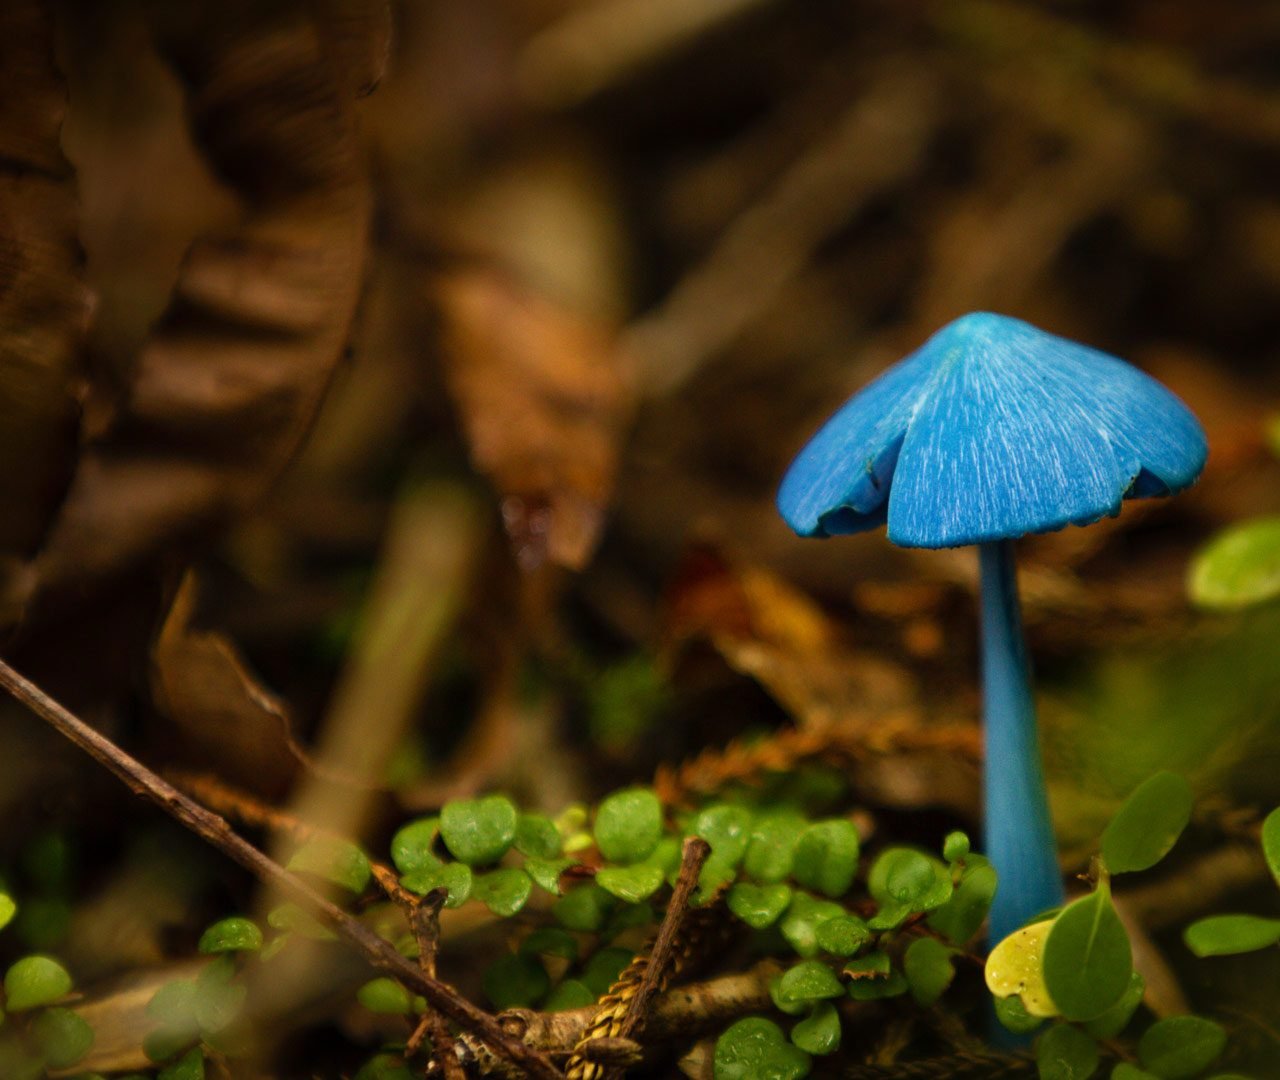 Живой синий гриб